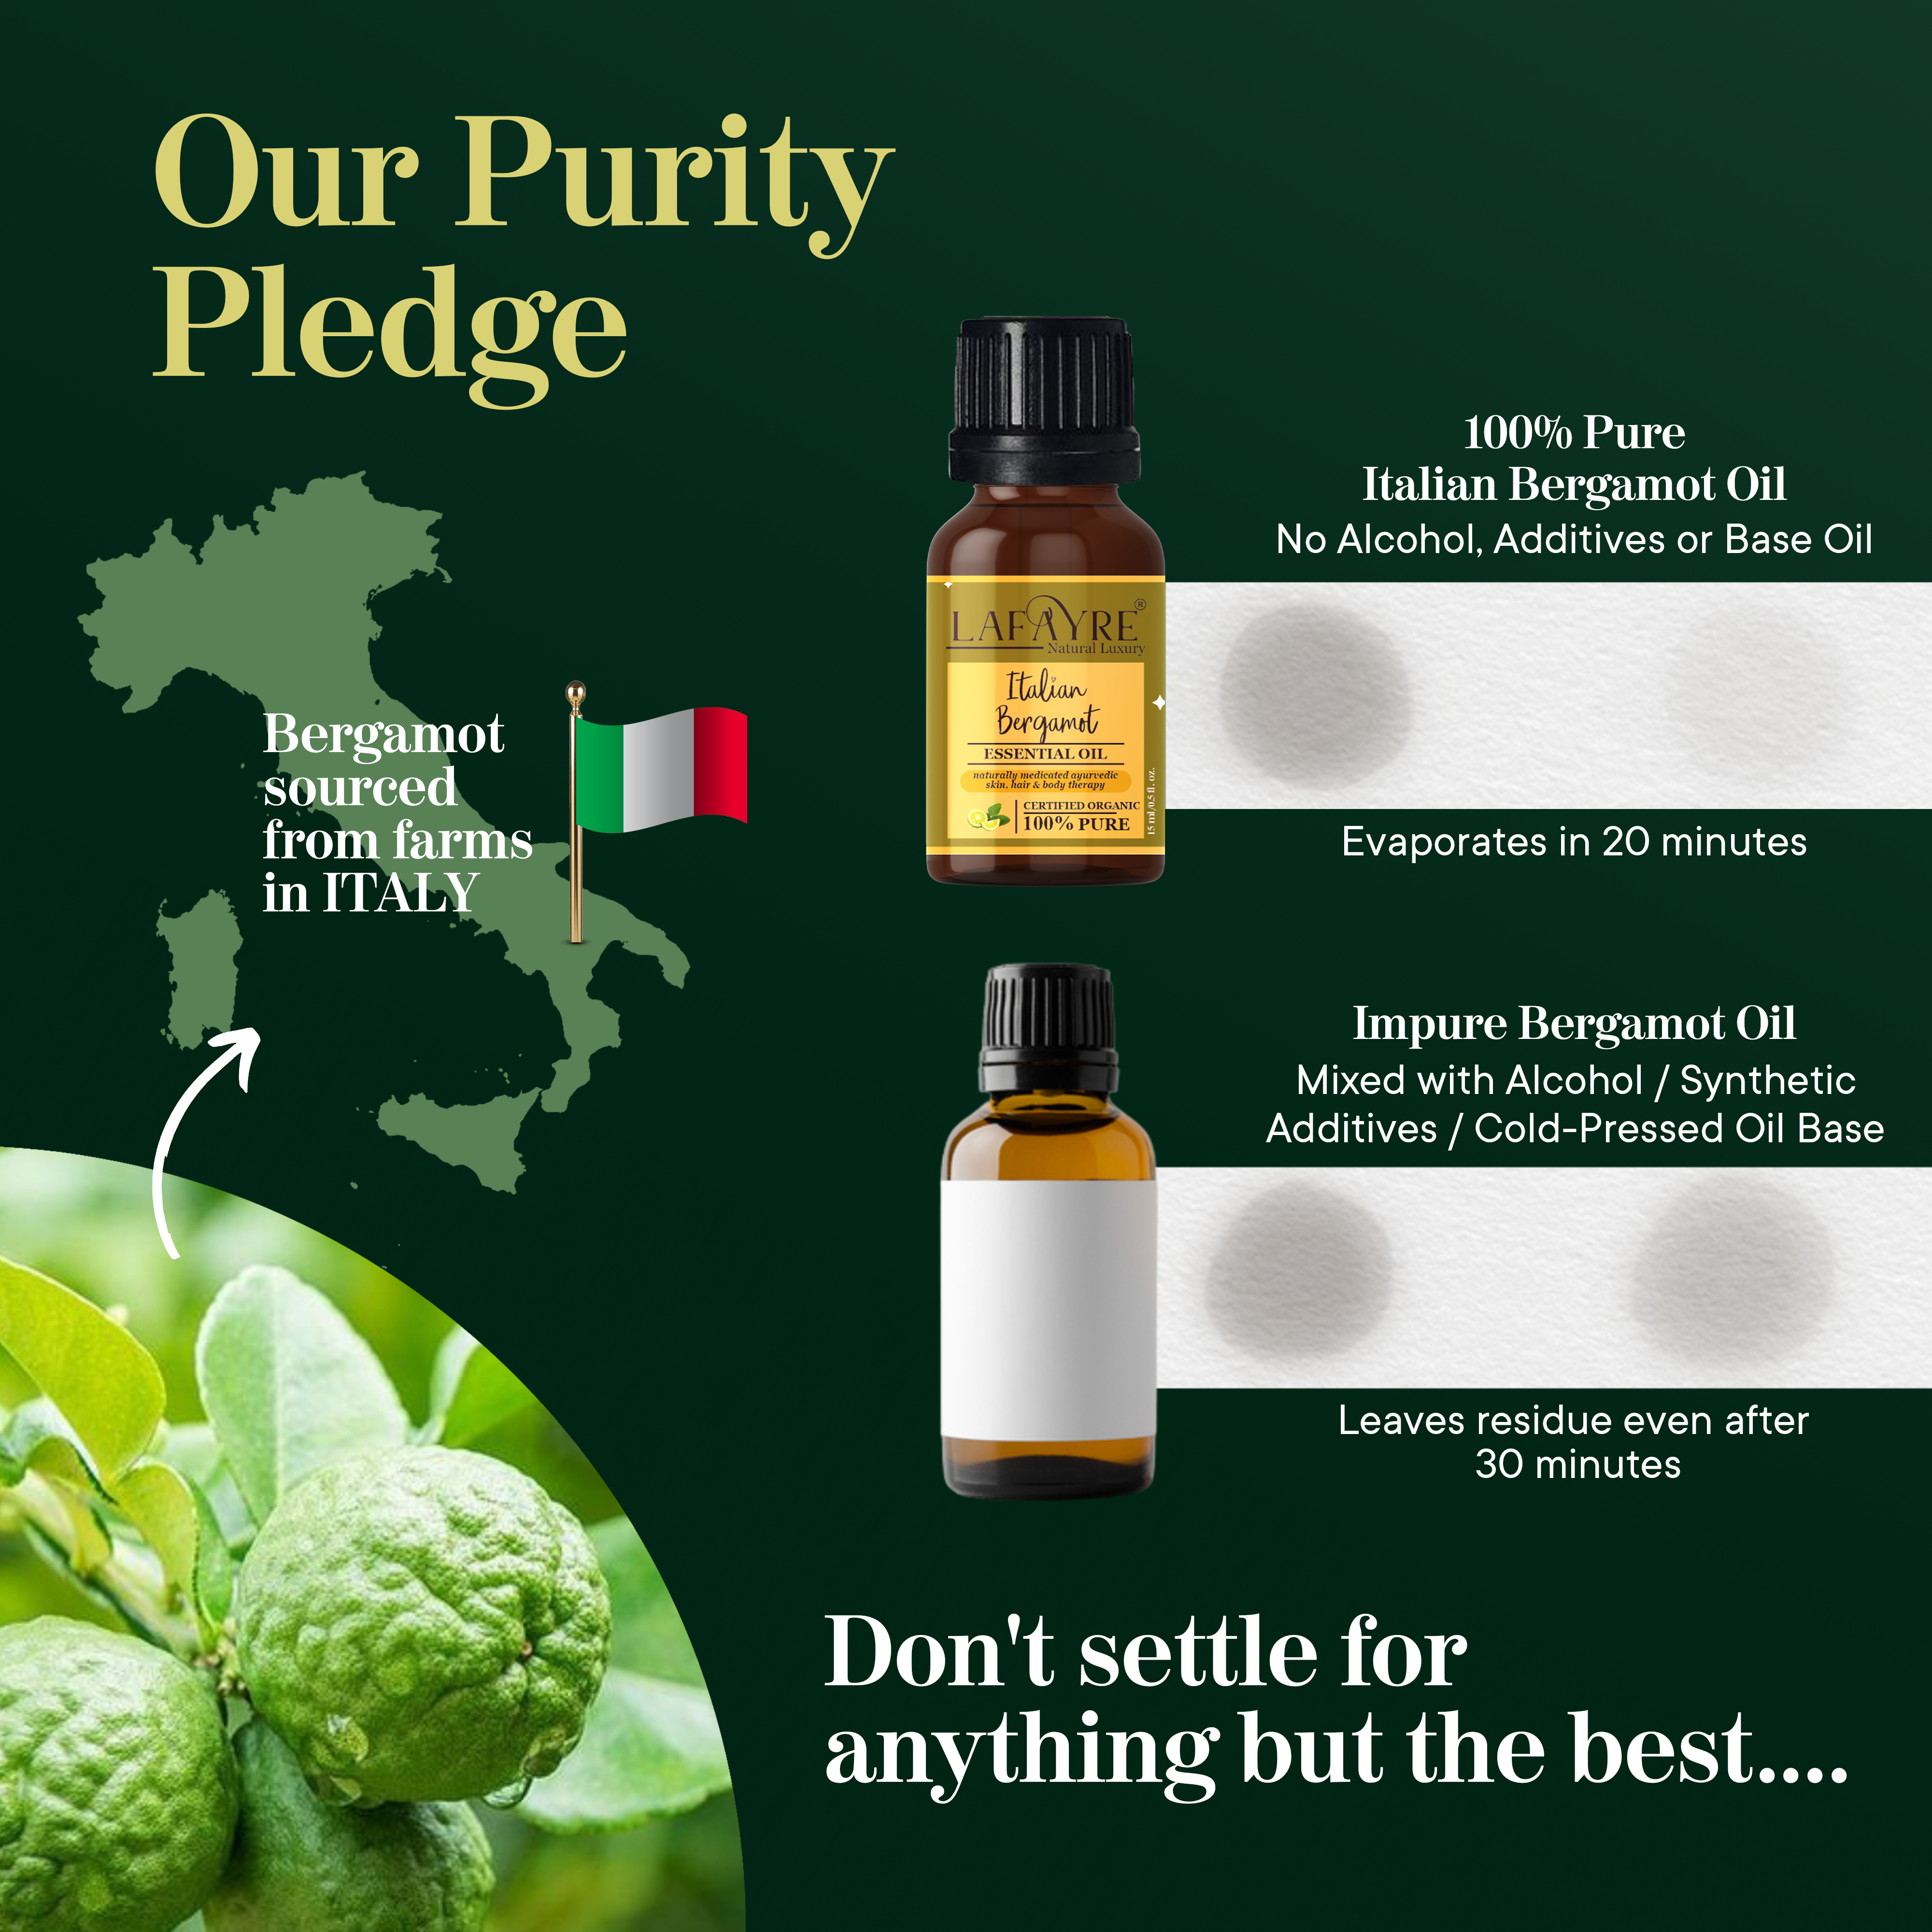 Italian Bergamot Essential Oil Pledge